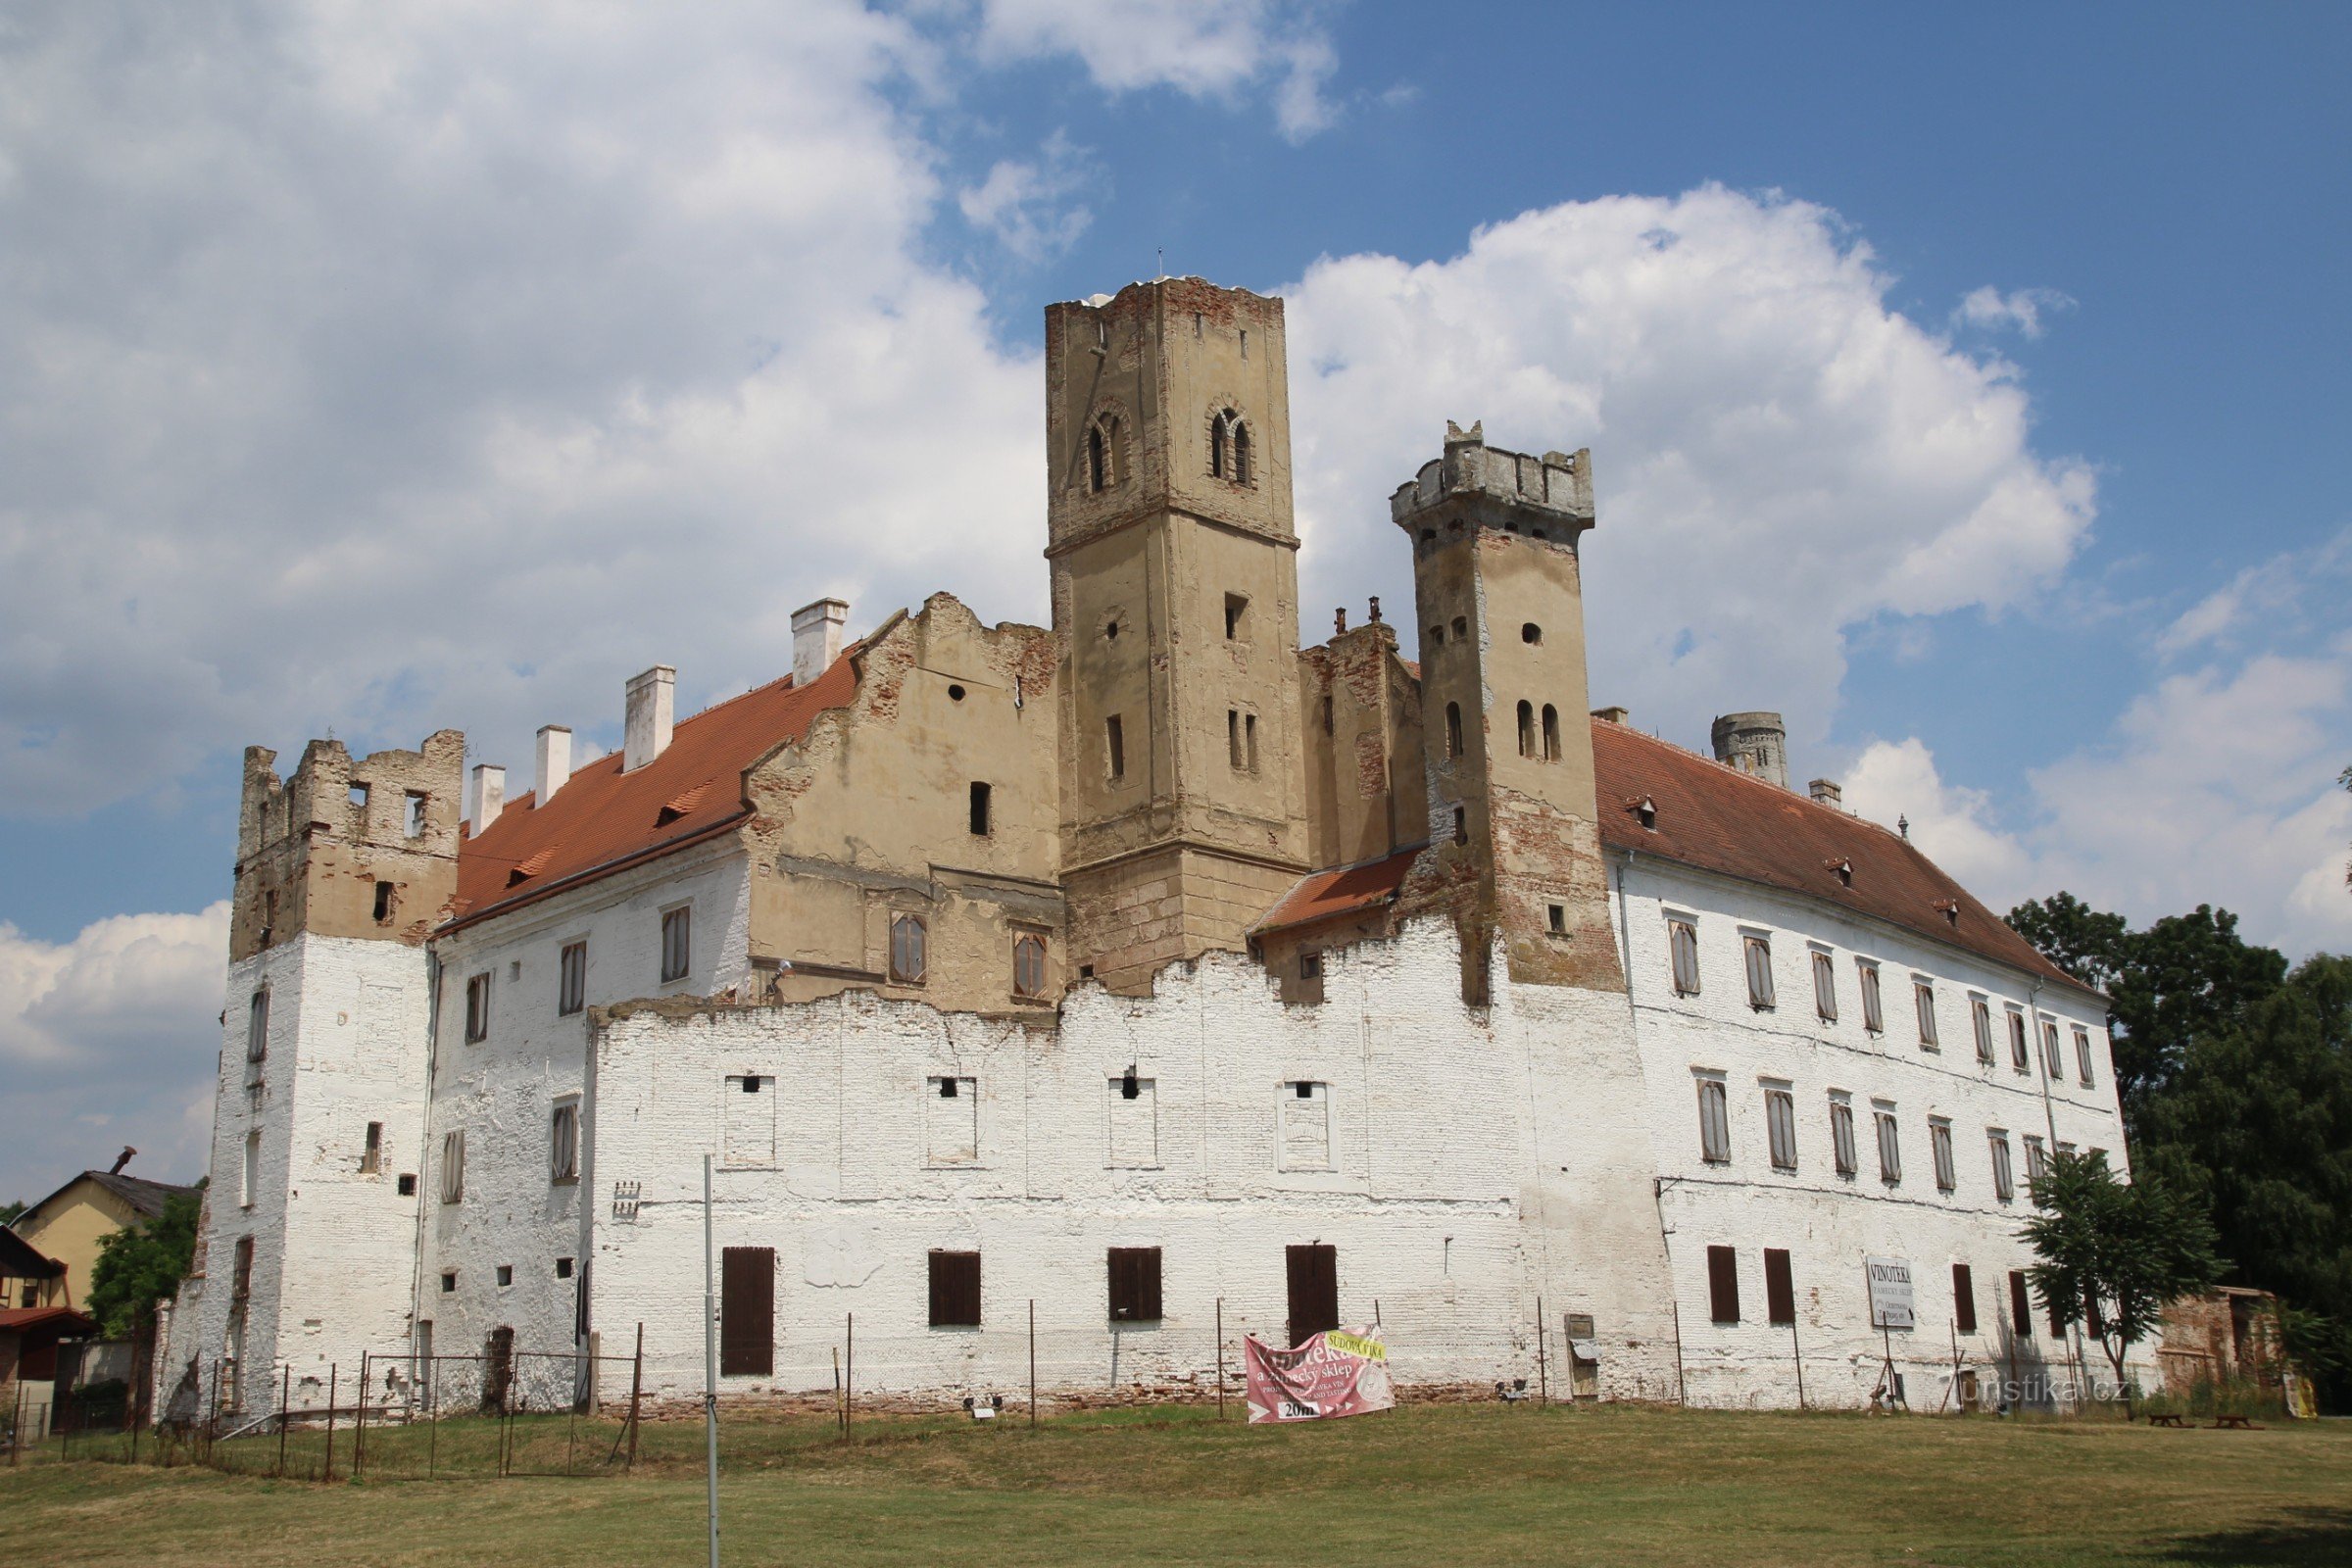 Pogled na dvorac Břeclav iz parka s dominantnom vidikovcem